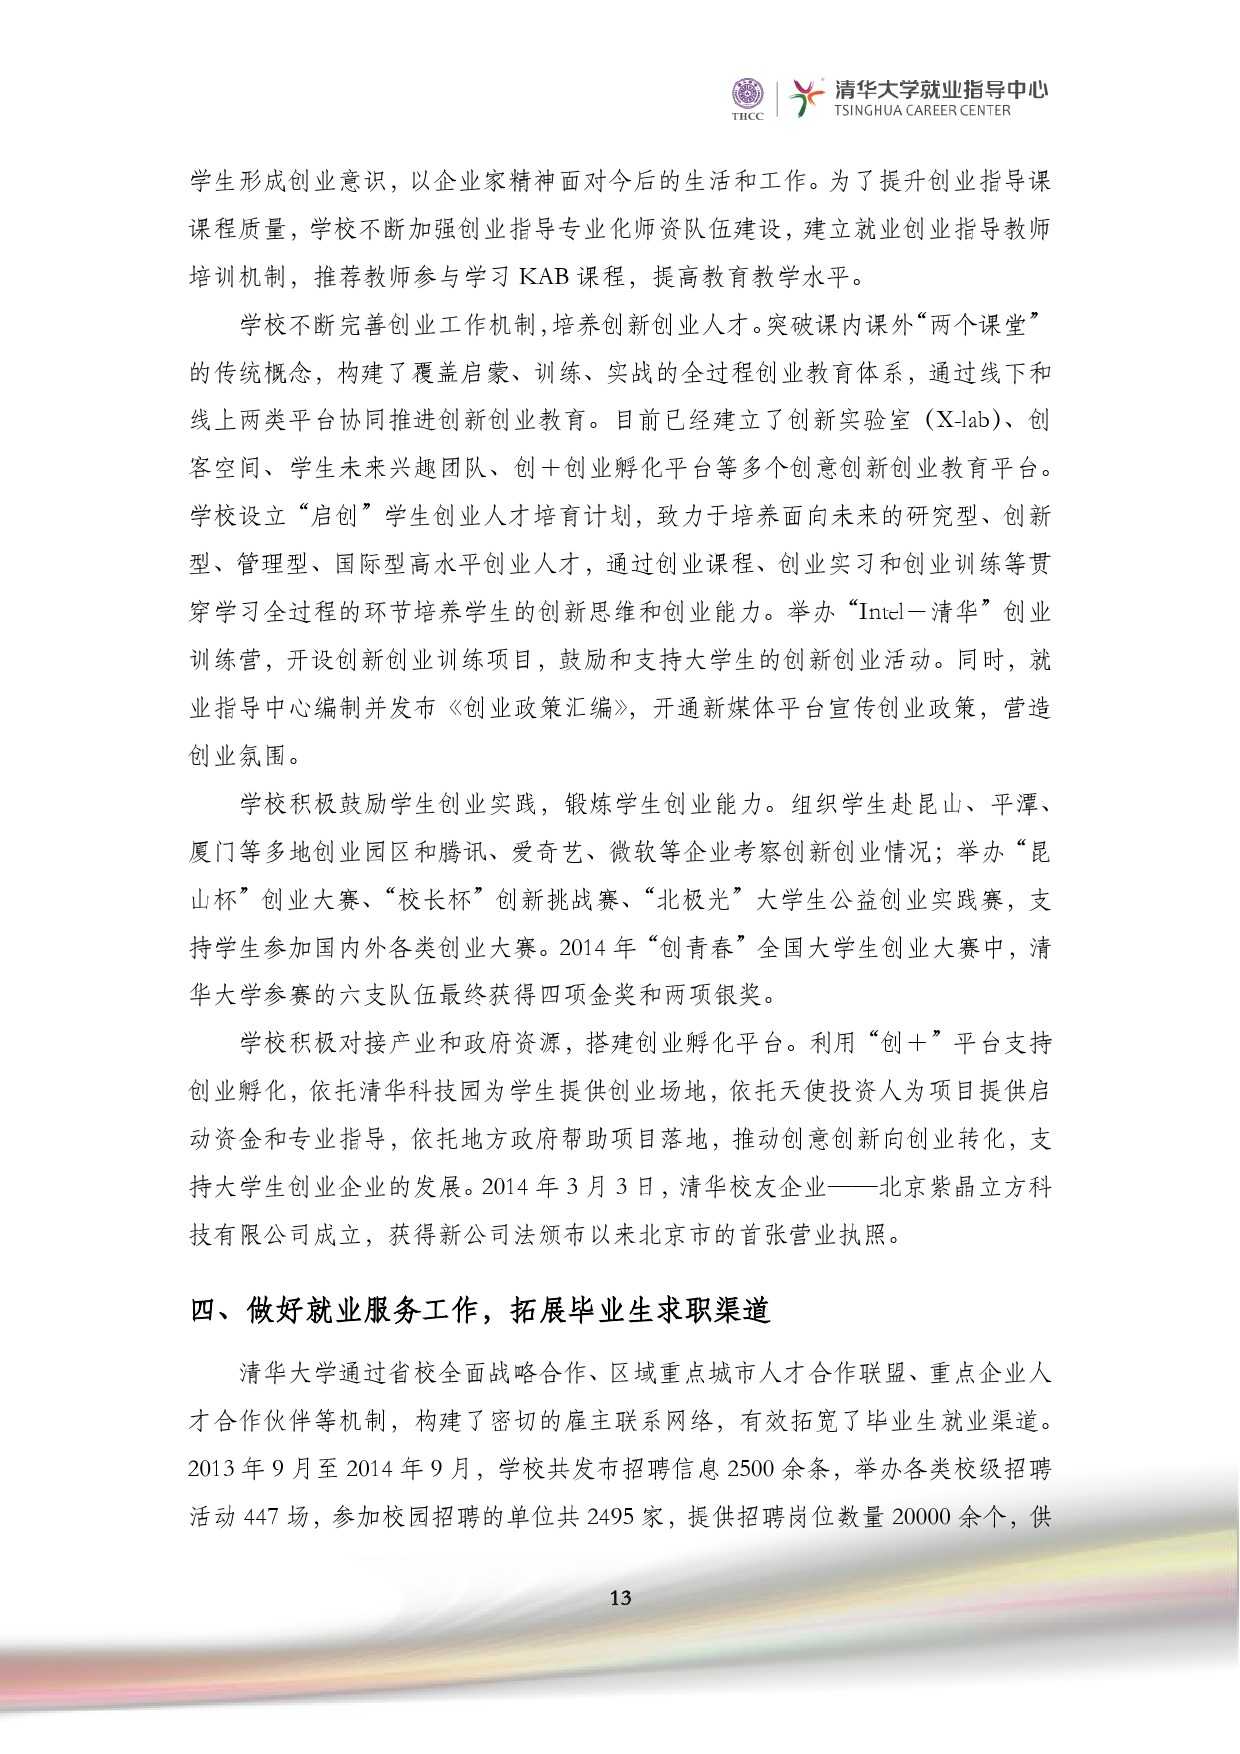 清華大學2014 年畢業生就業質量報告_000015